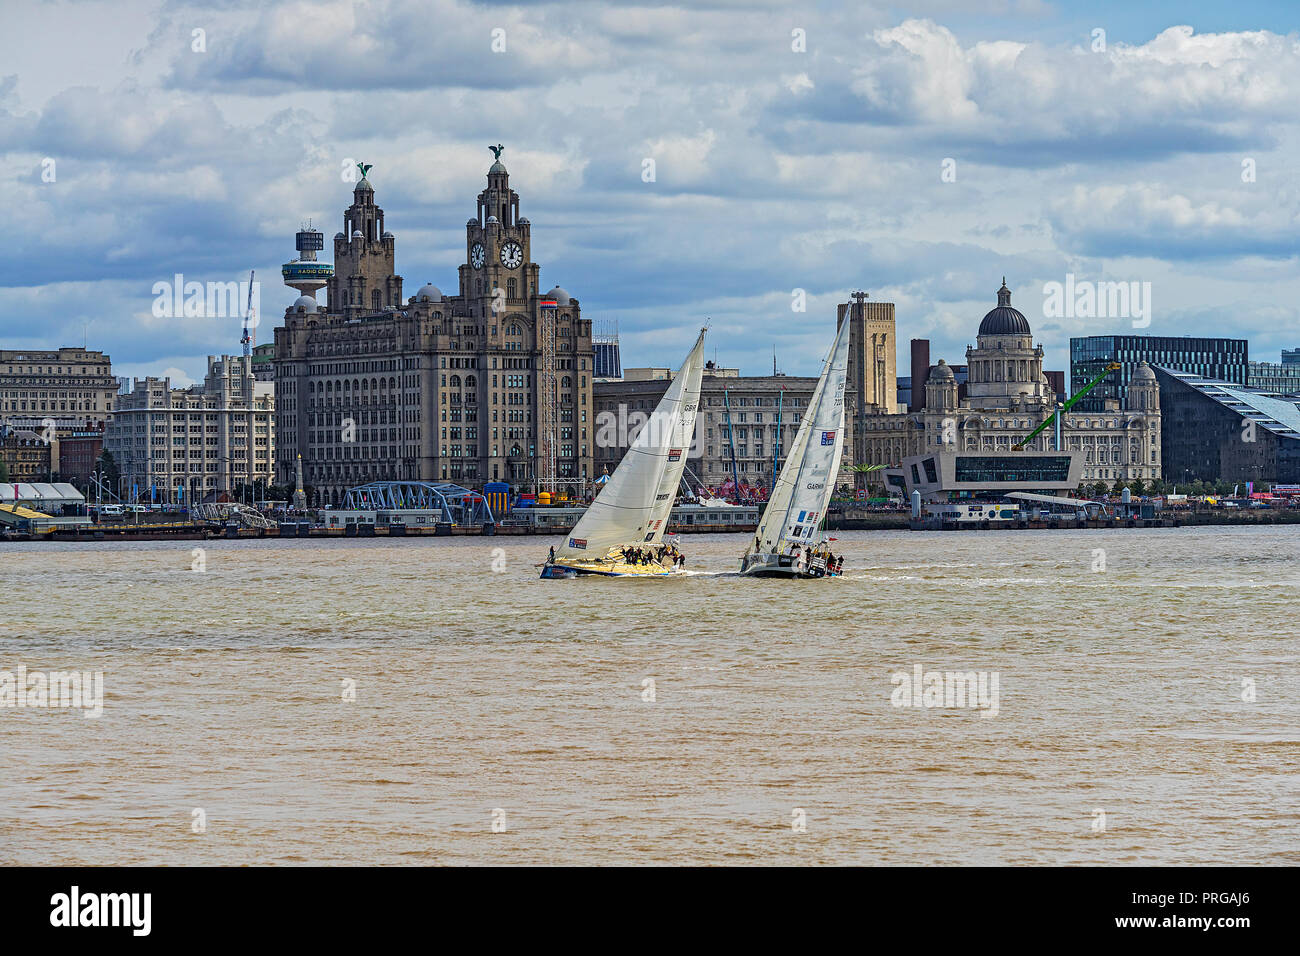 Clipper Round the World Race 2017-18 2 Yachten, die die Drei Grazien Gebäude an der Waterfront von Liverpool zeigt am Sonntag, den 20. August 2017 Stockfoto